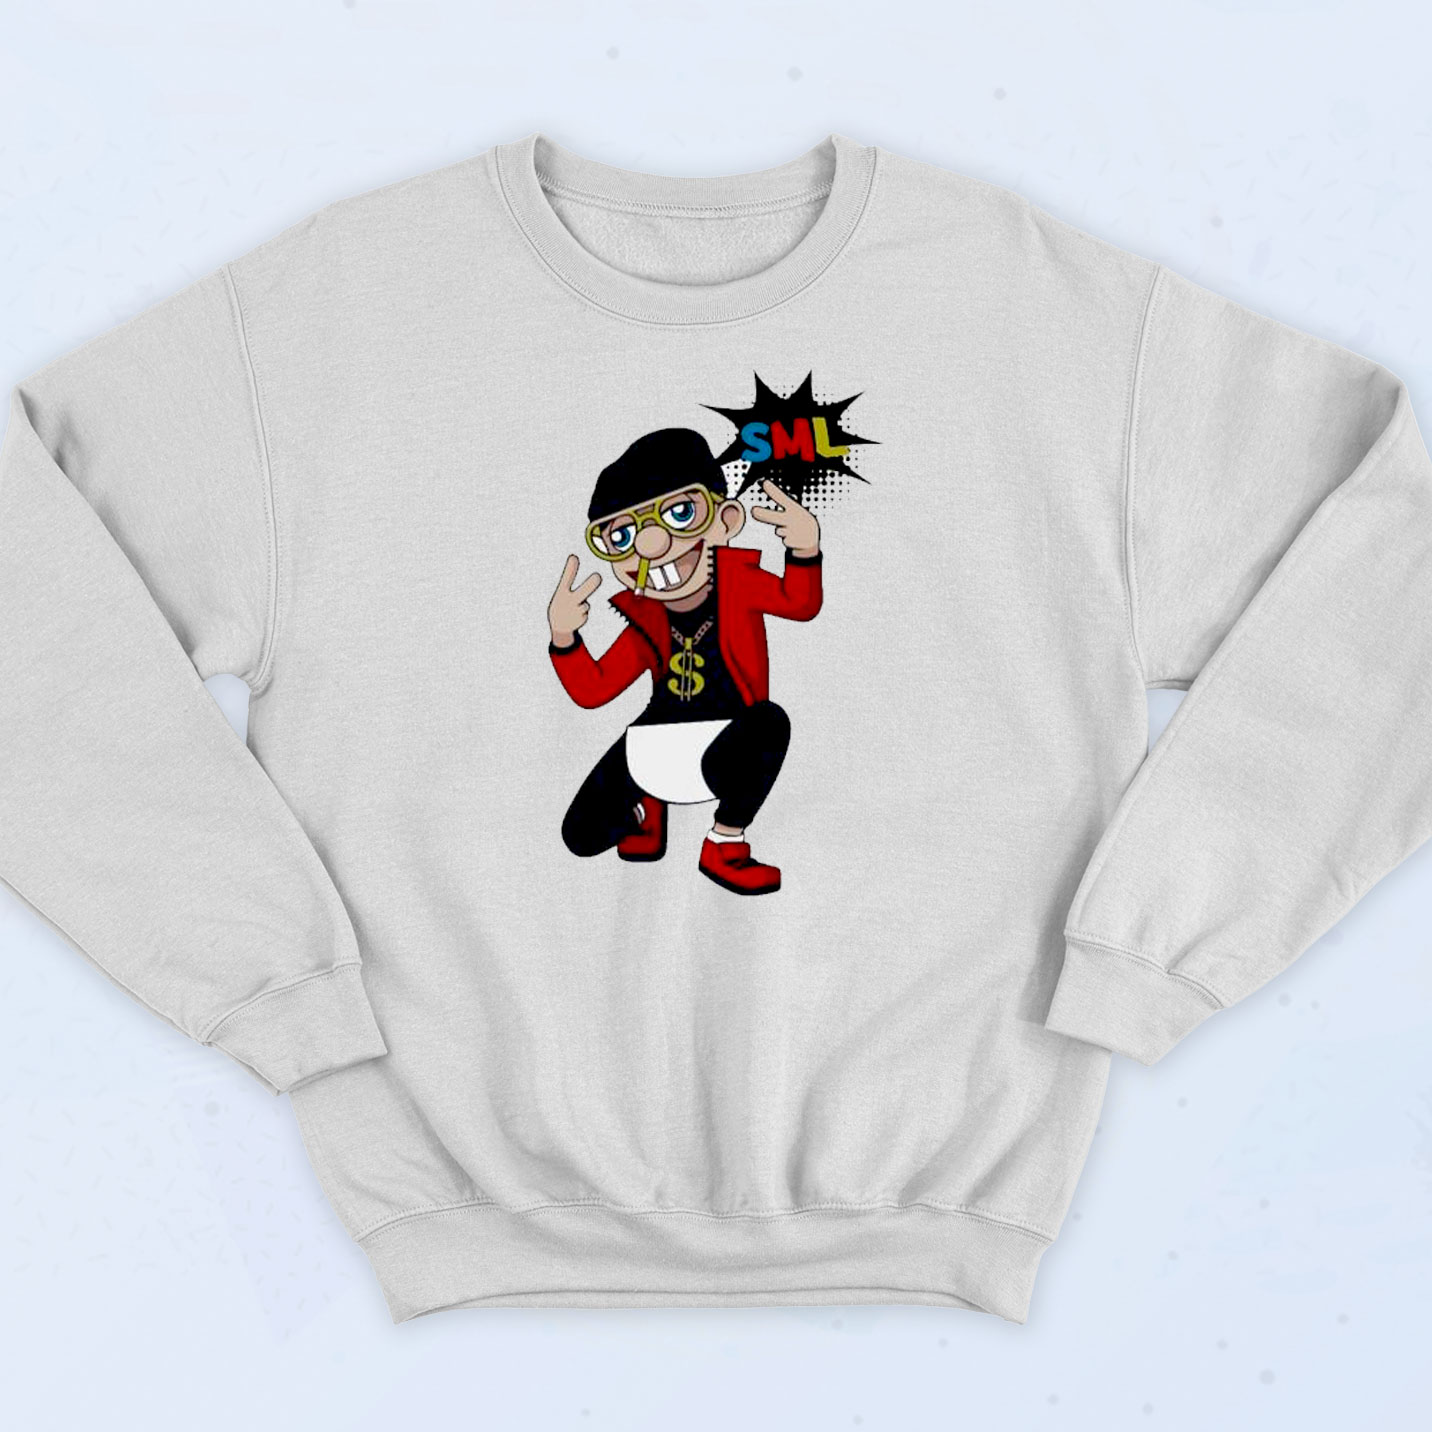 Sml Jeffy The Rapper Sweatshirt - 90sclothes.com